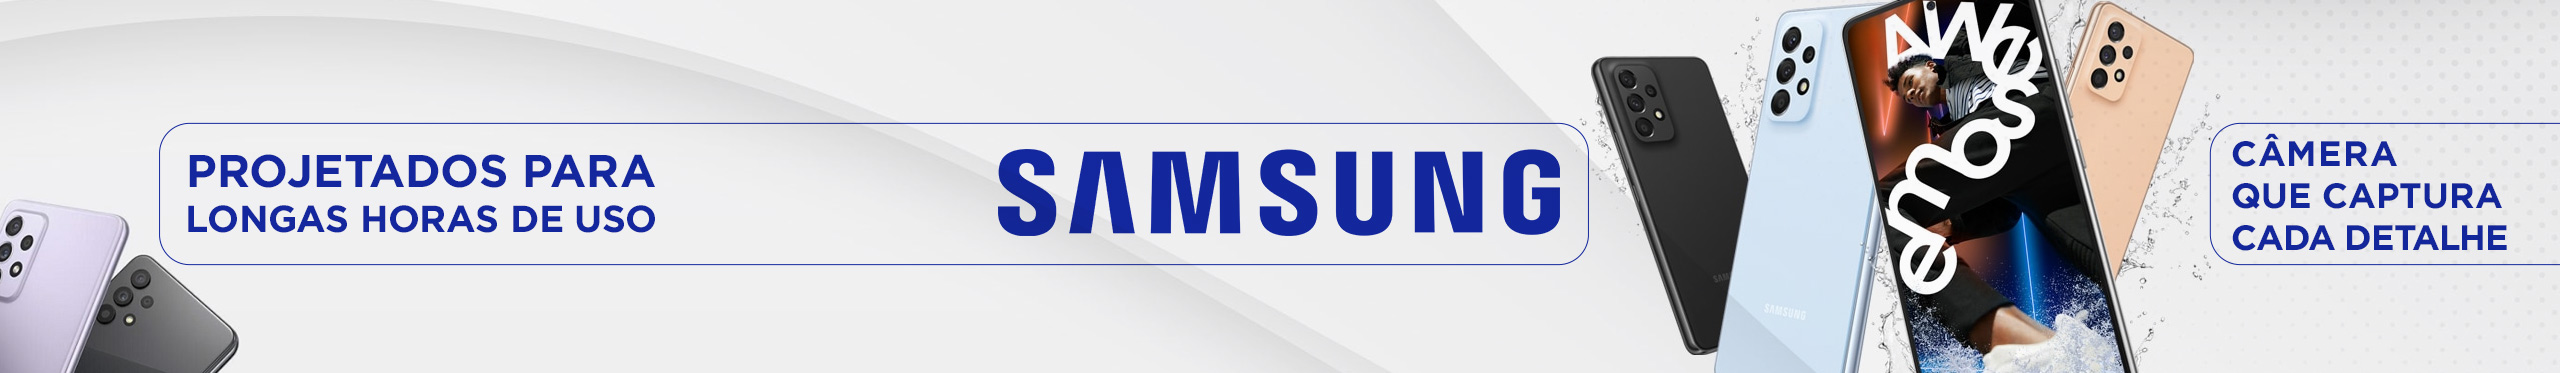 Agora a Samsung também está na Terabyte! Confira nossas ofertas.